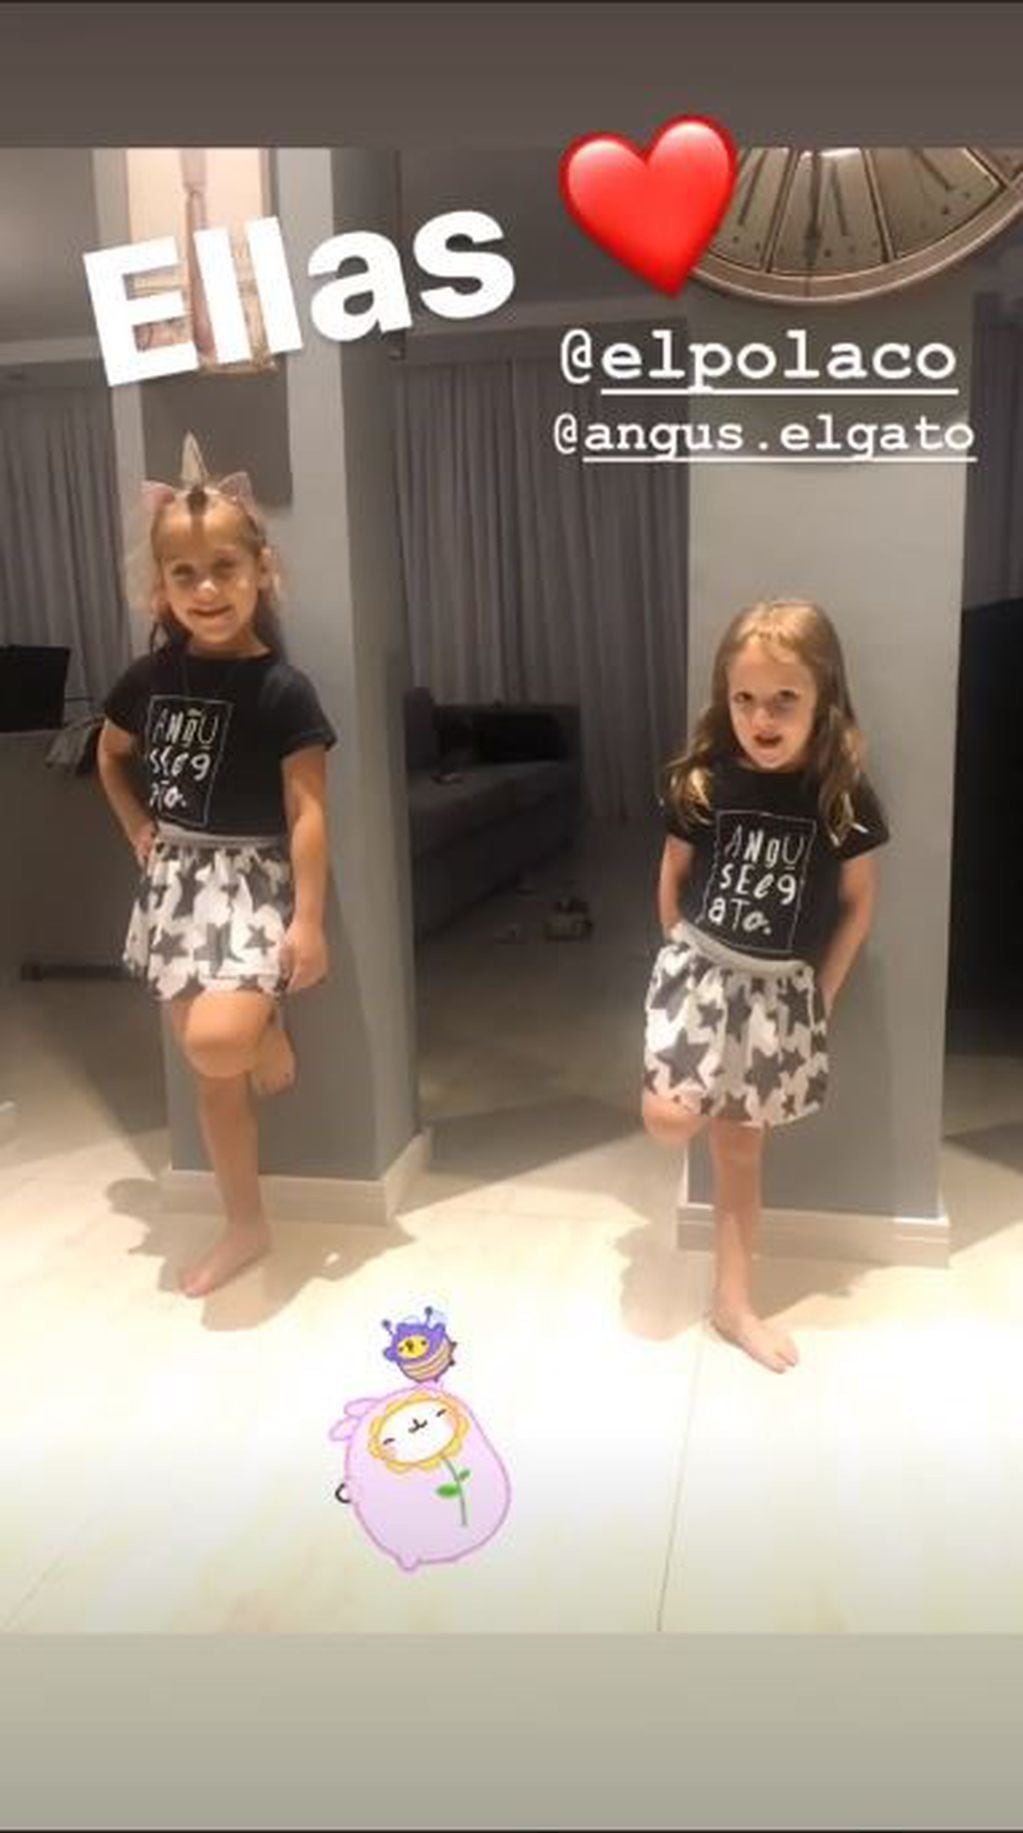 Las hijas de Barby Silenzi y El Polaco posaron como mellizas: "Ellas" (Foto: Instagram/ @barby_silenzi)